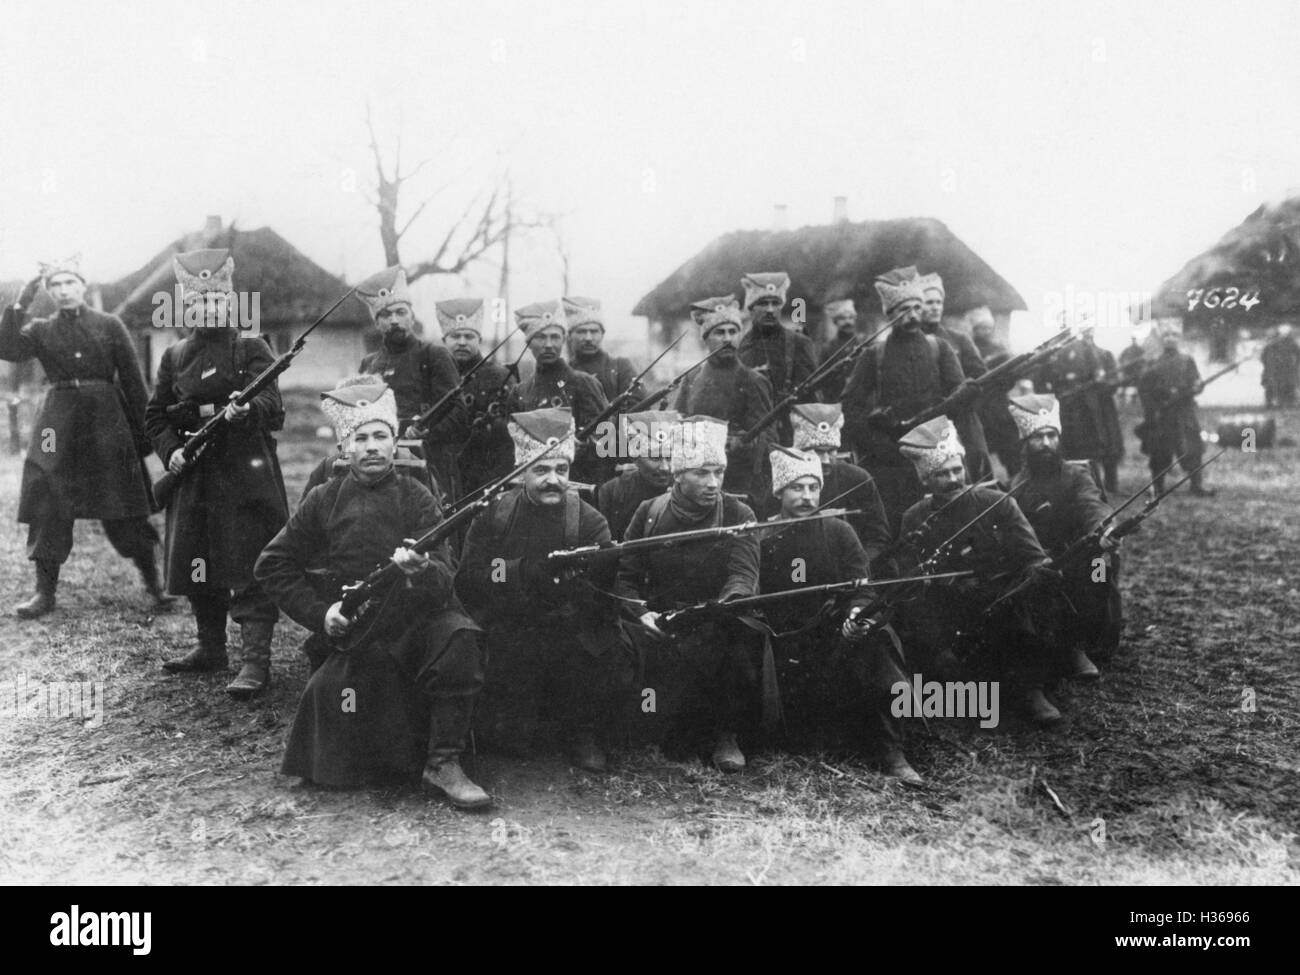 Les soldats ukrainiens pendant un exercice, 1921 Banque D'Images